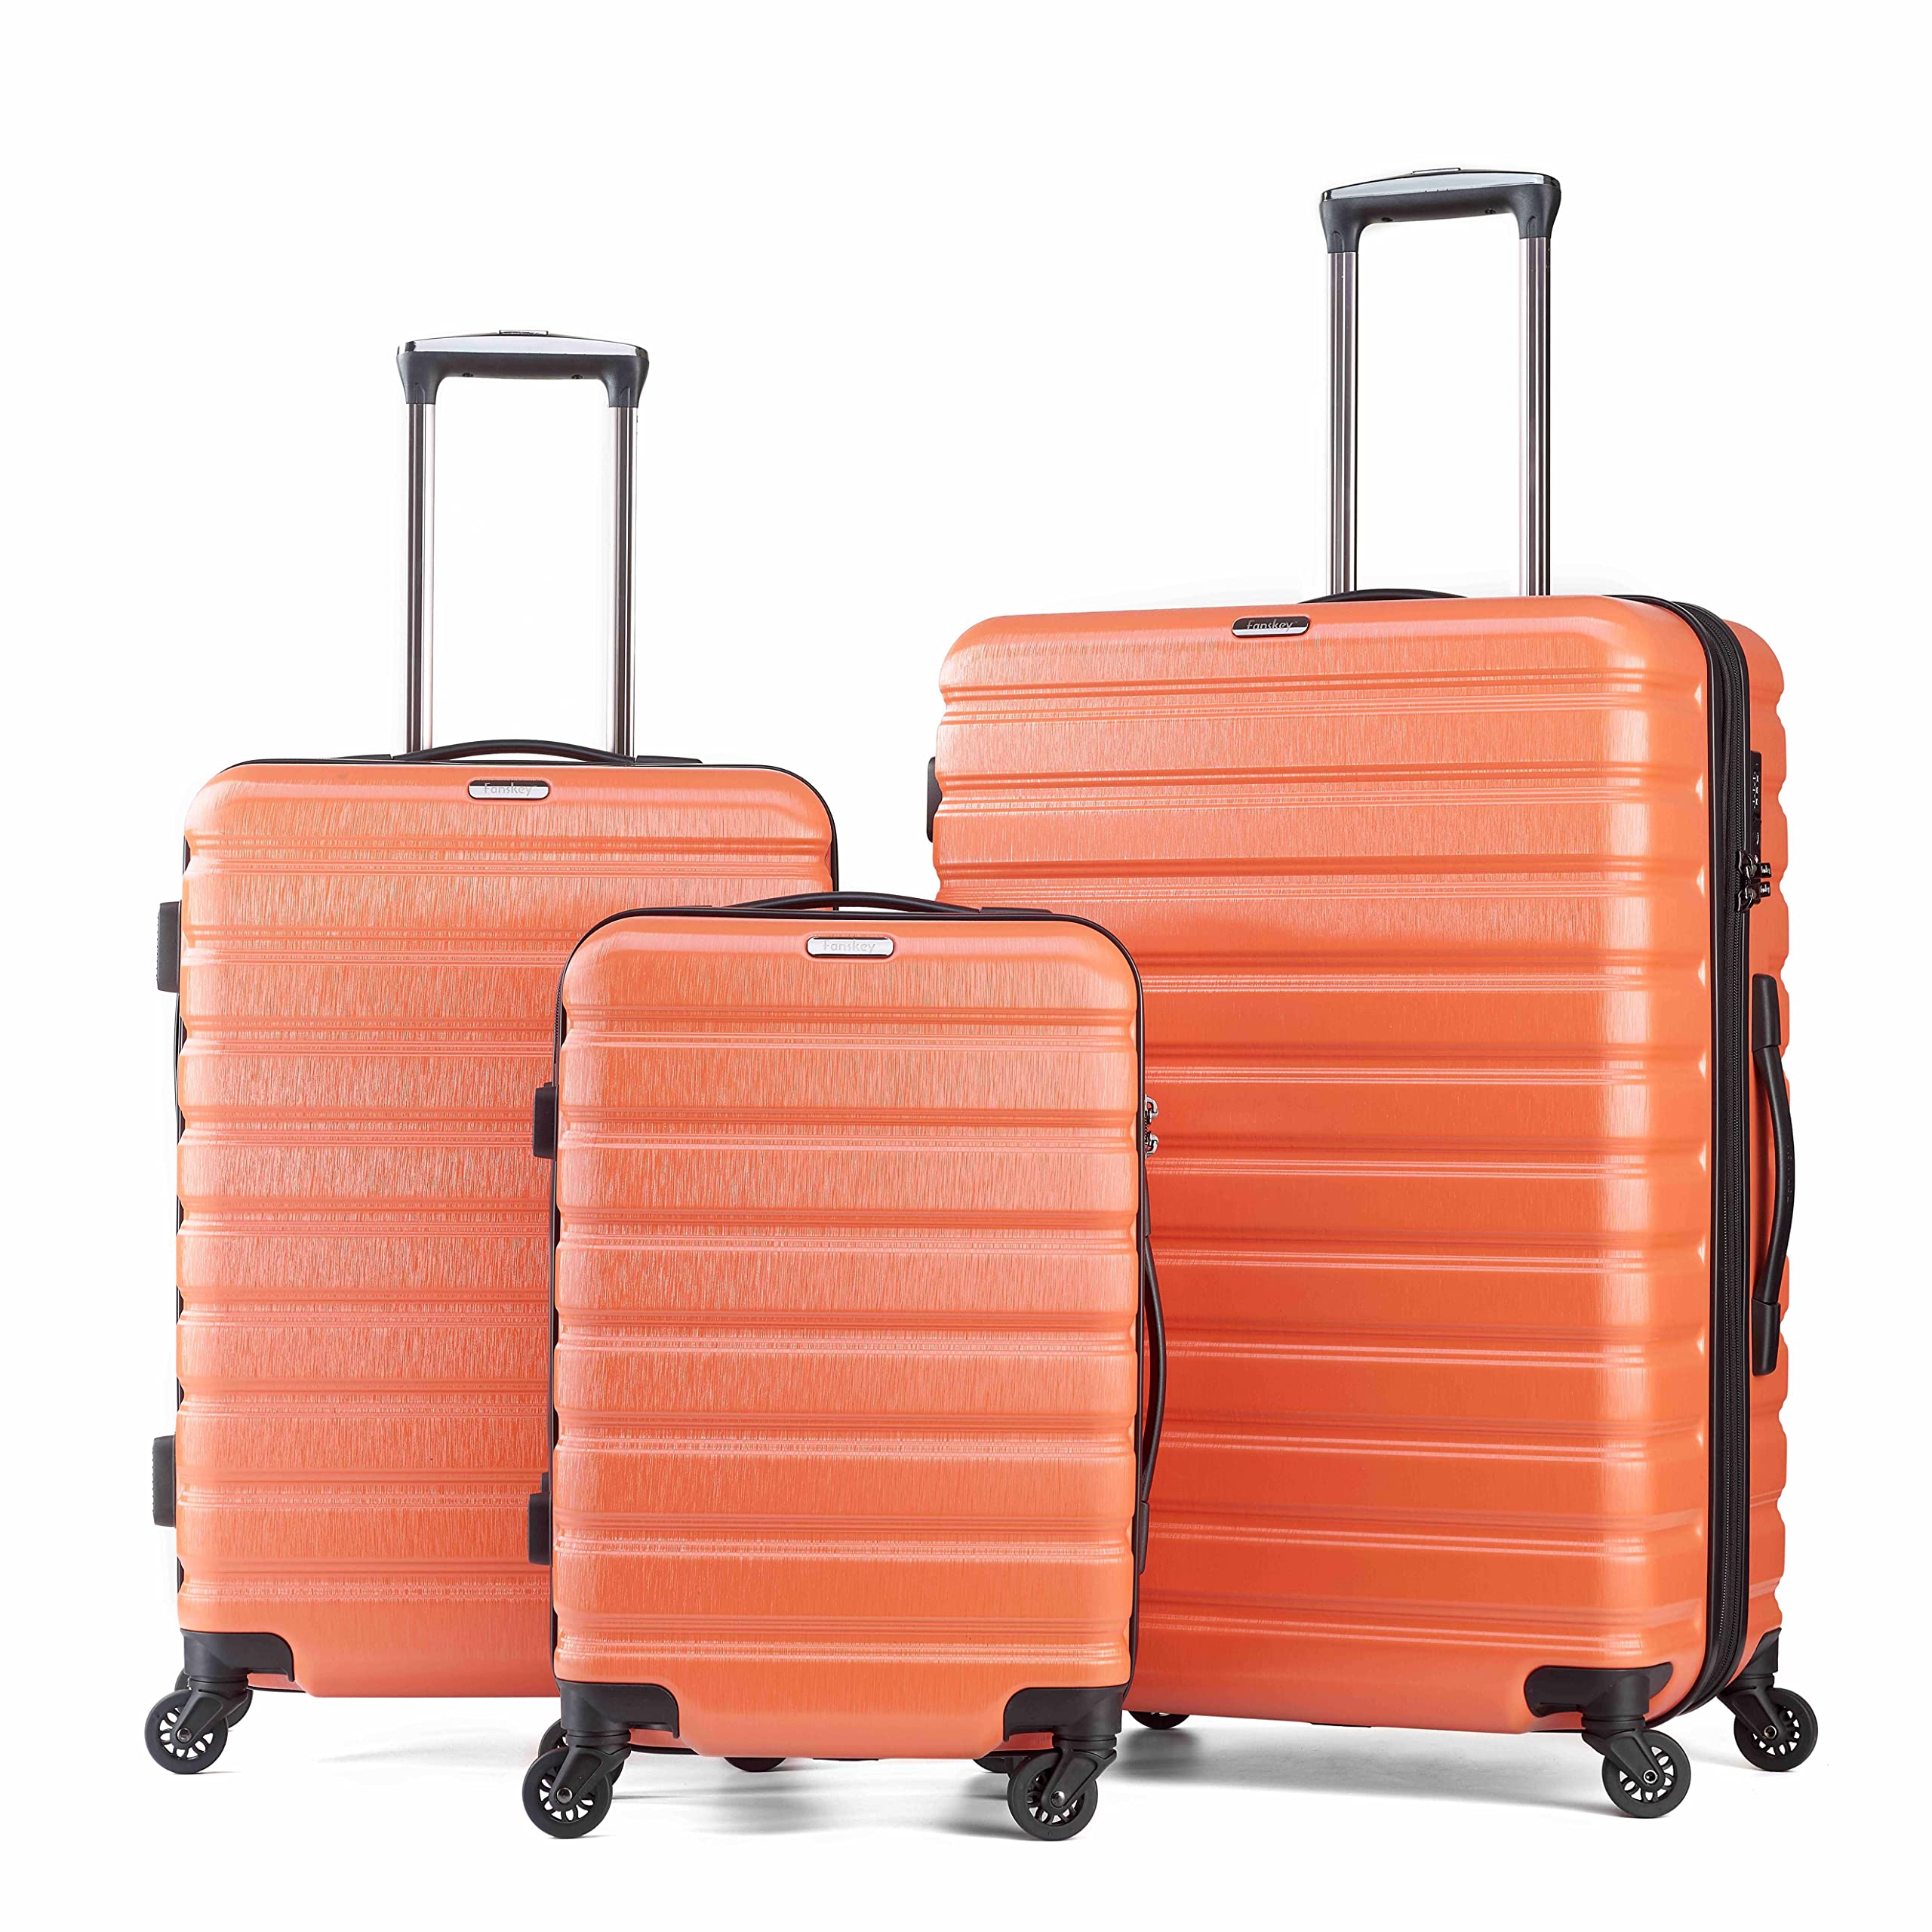 Fanskey Luggage, 3 Piece Set Suitcase with Spinner wheels, TSA LockHardshell, Lightweight (Tigerlily orange)